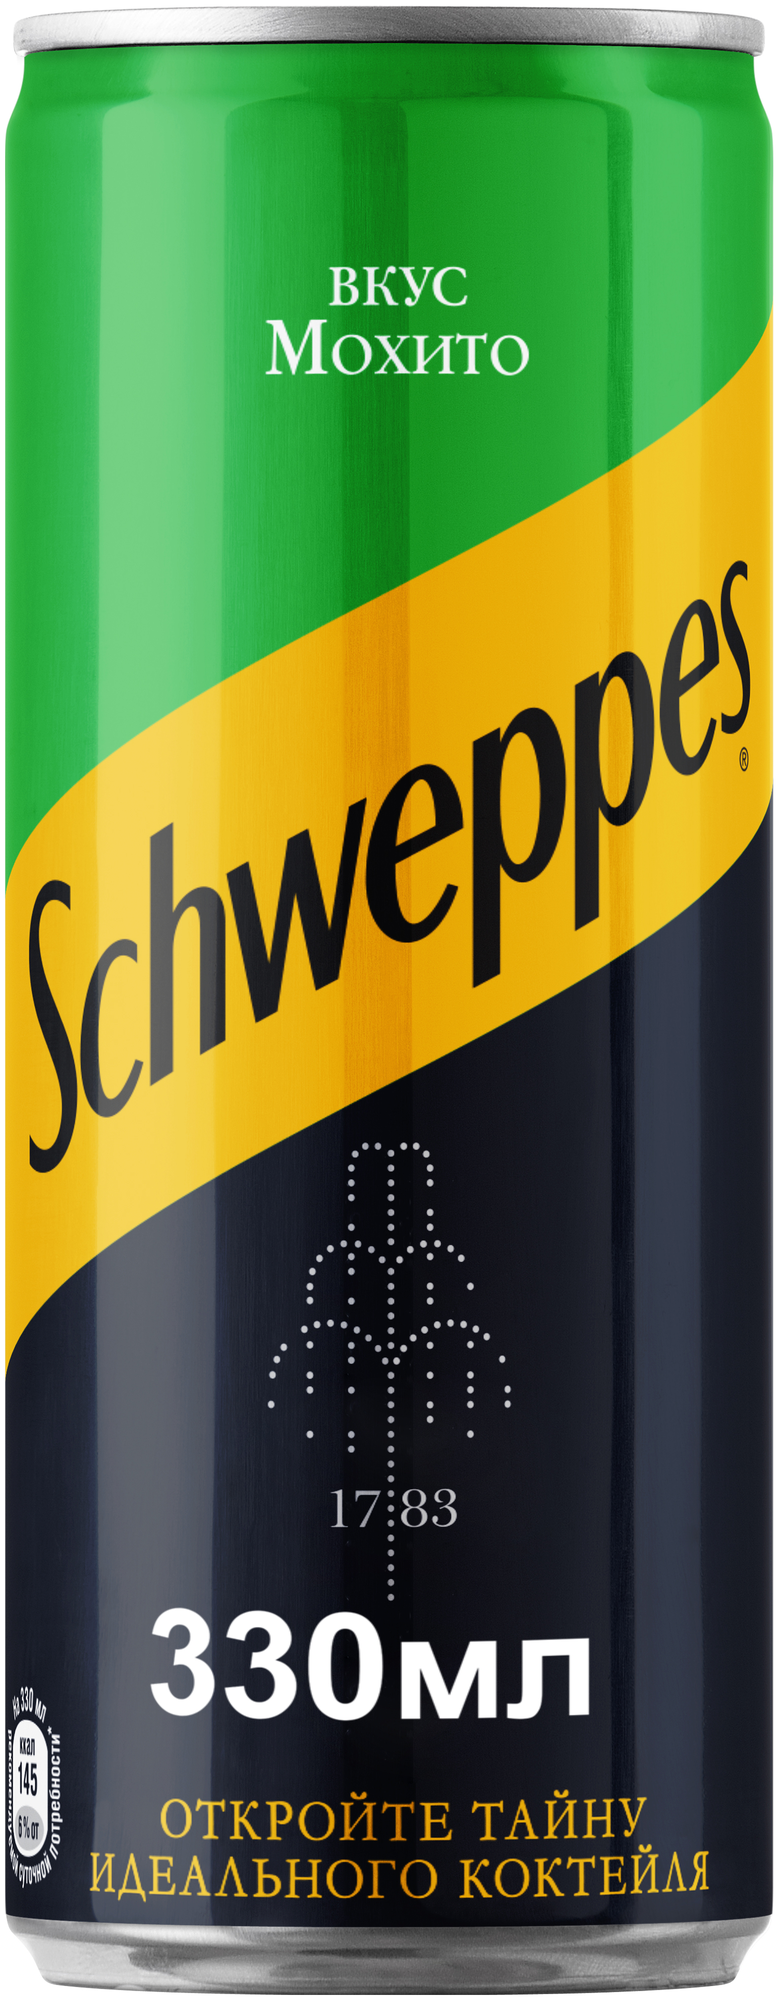 Газированный напиток Schweppes Мохито